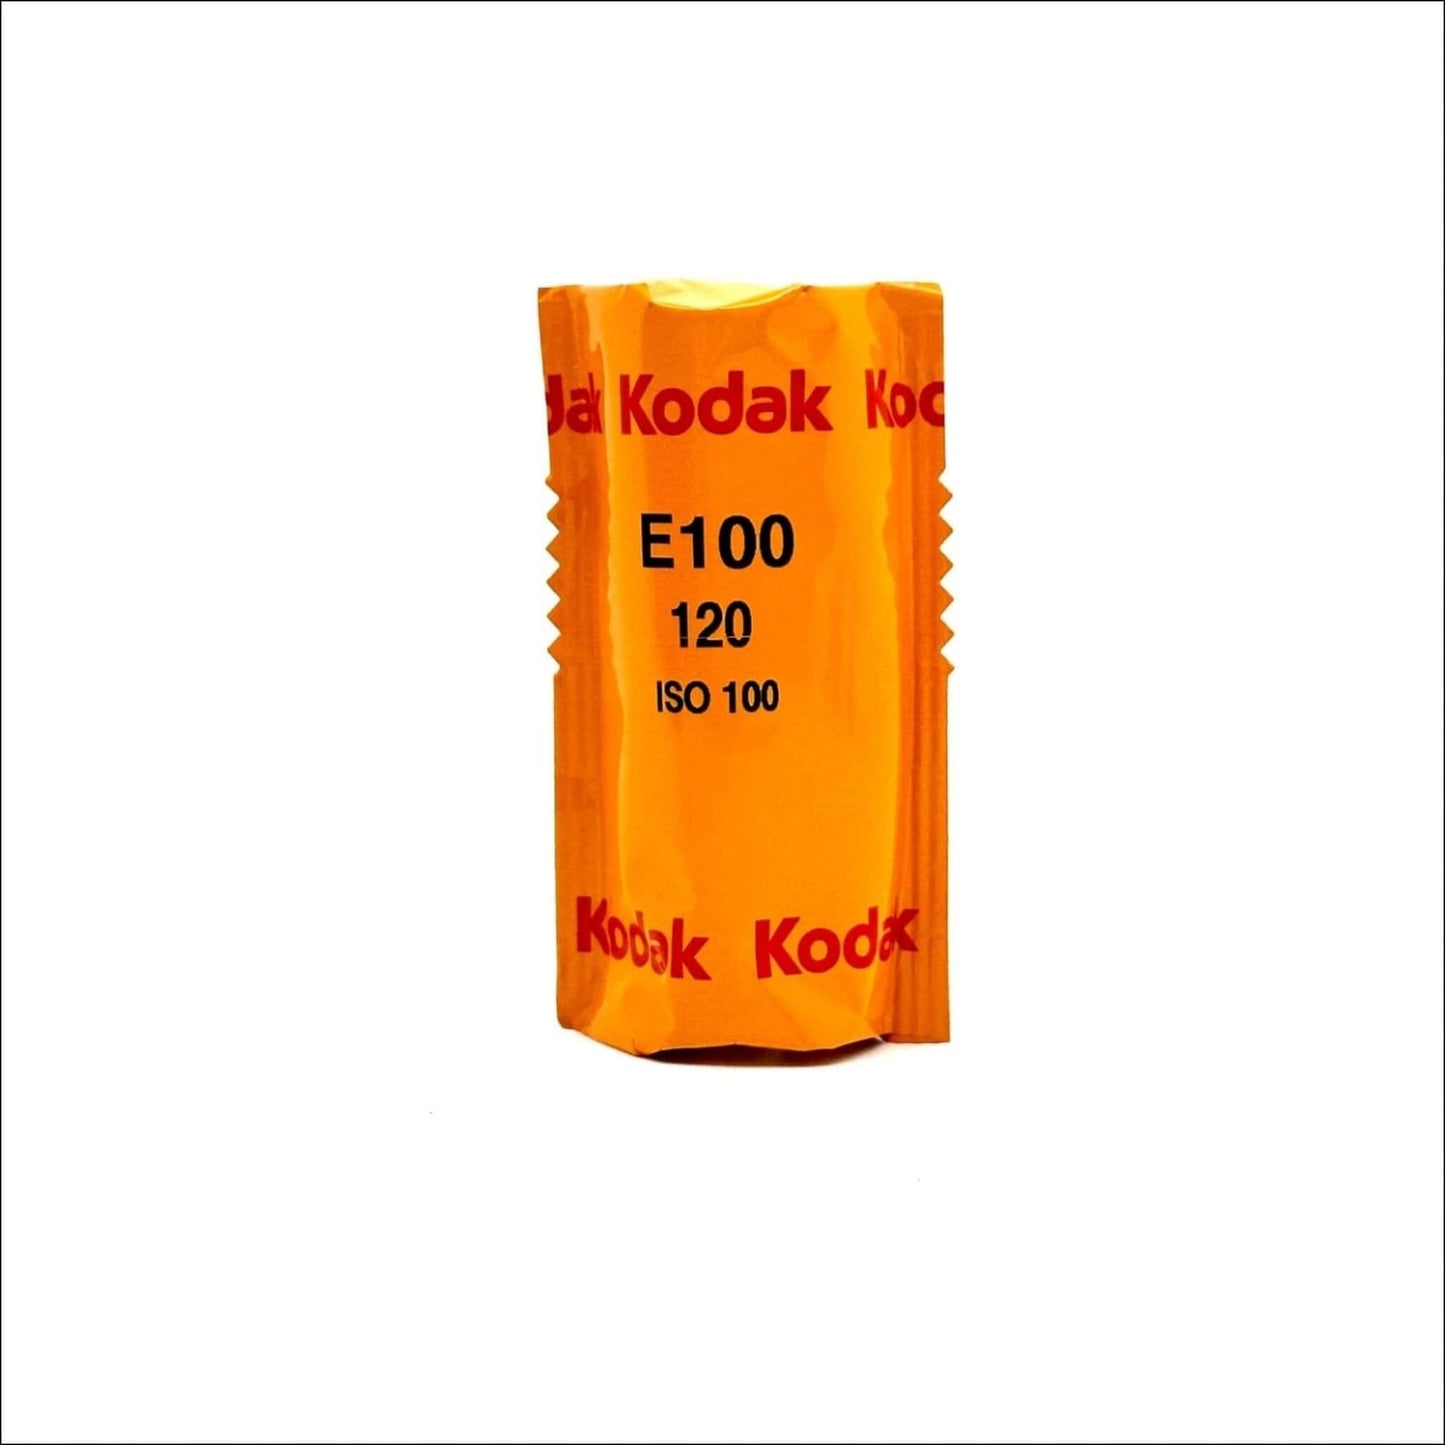 Kodak Ektachrome E100 Color E6 Transparency 120 Film Single